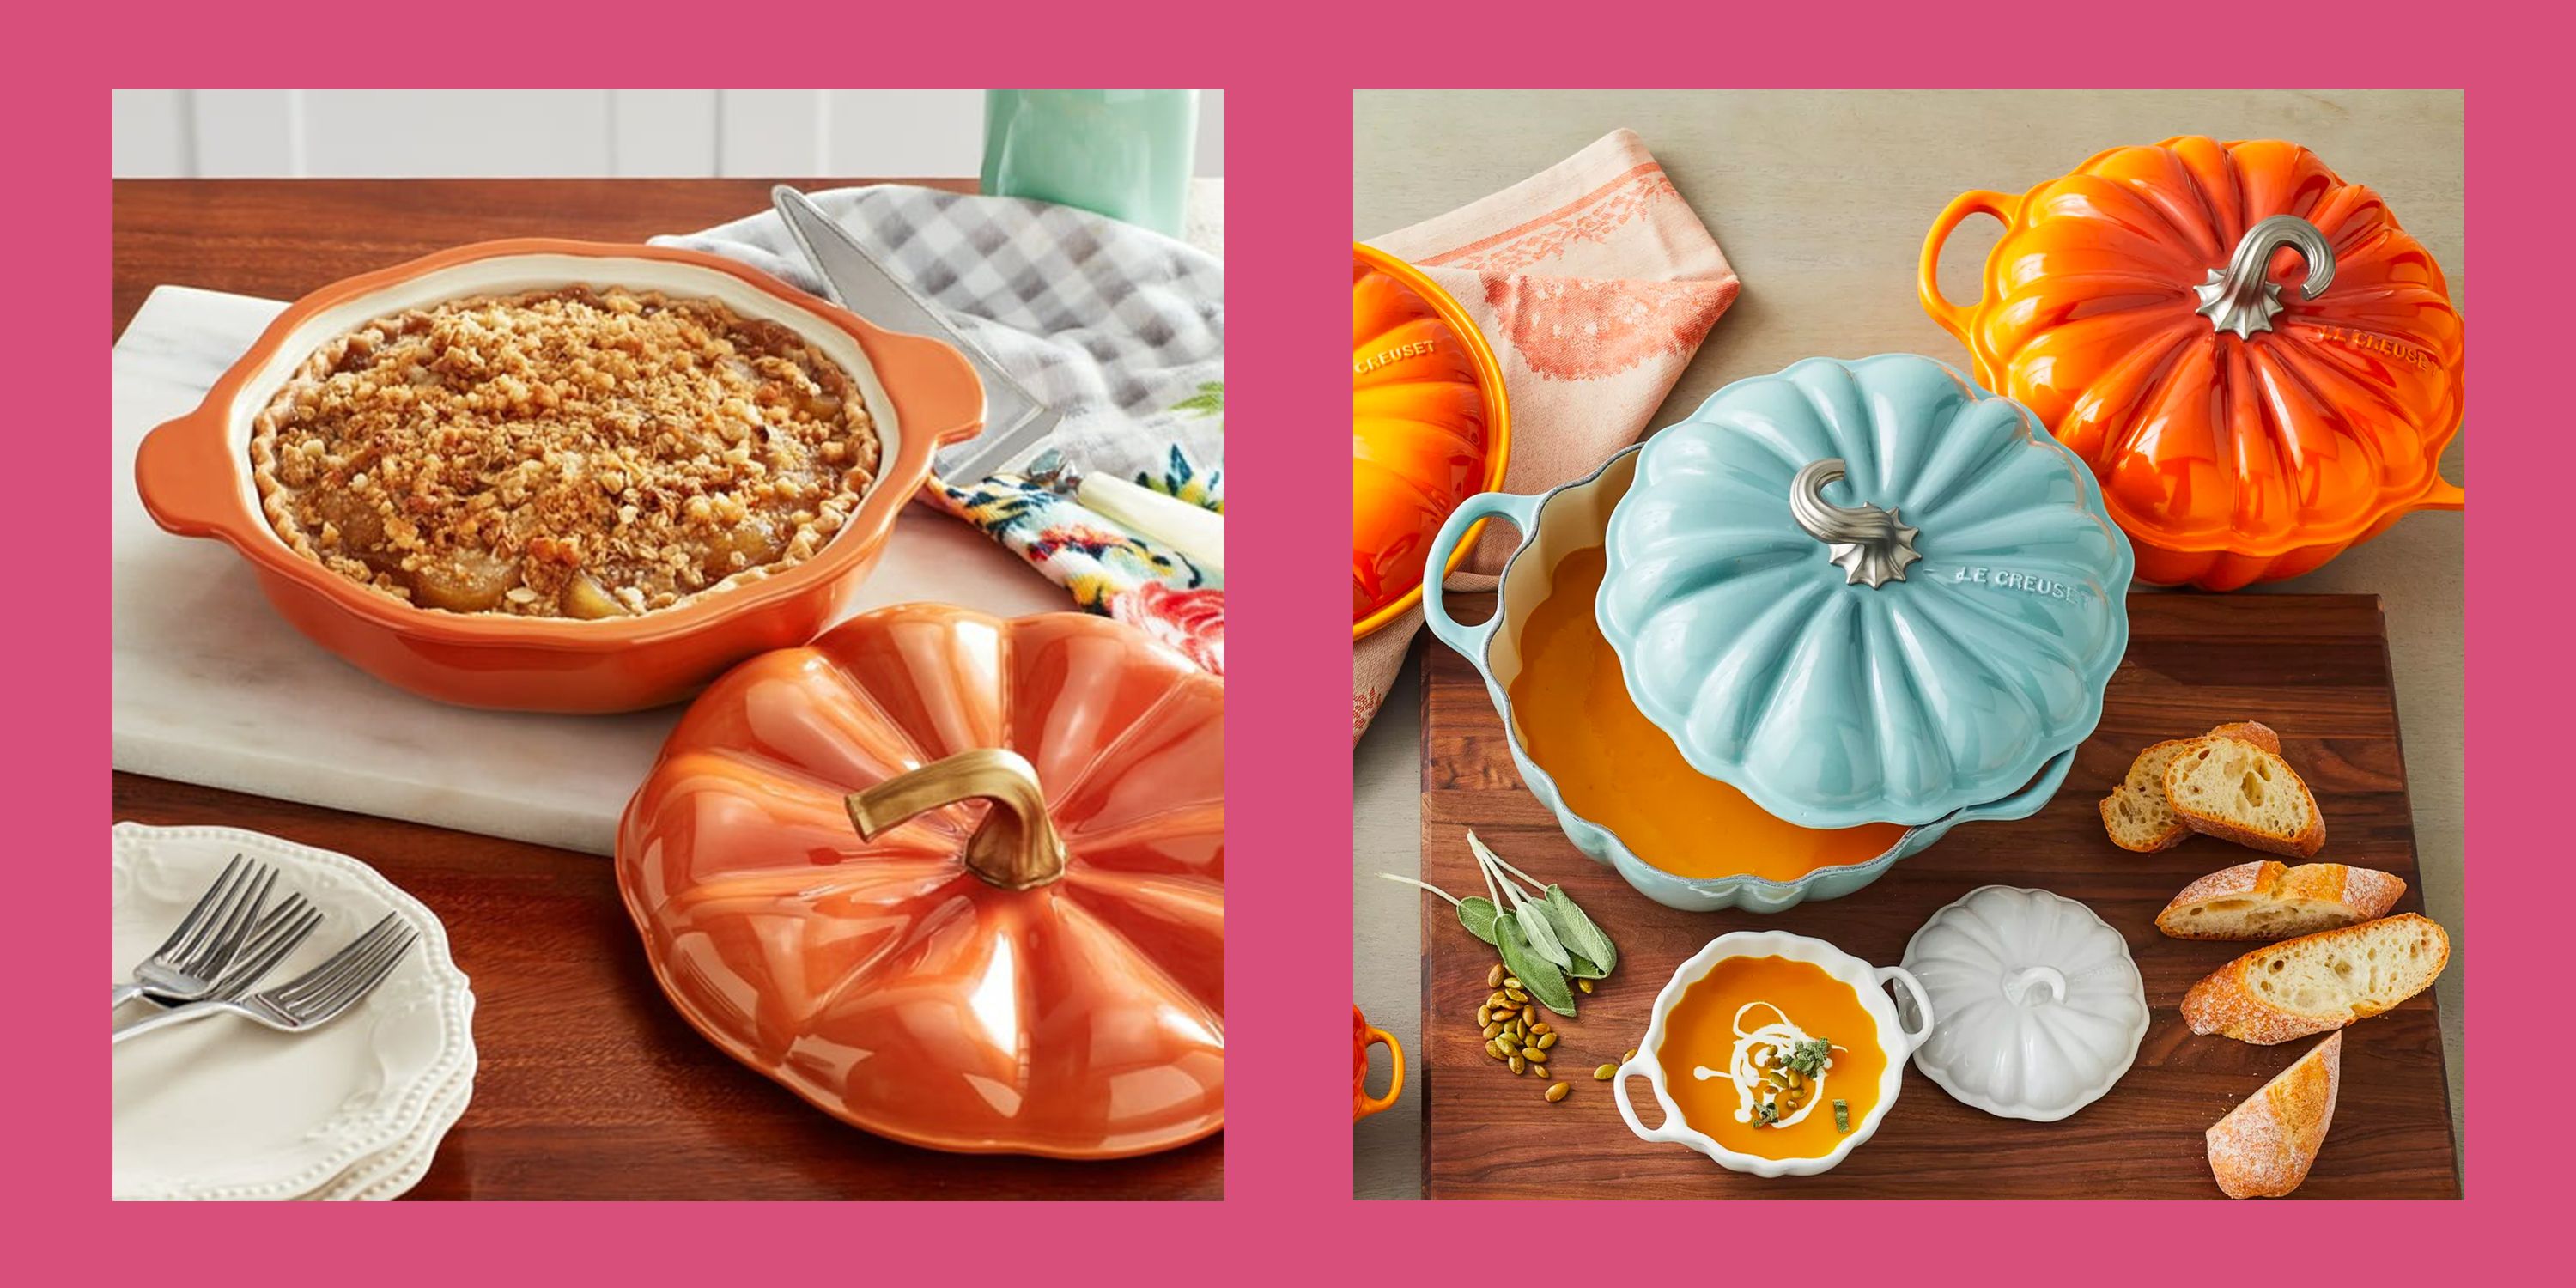 https://hips.hearstapps.com/hmg-prod/images/pumpkin-shaped-cookware-65300381bbca9.jpg